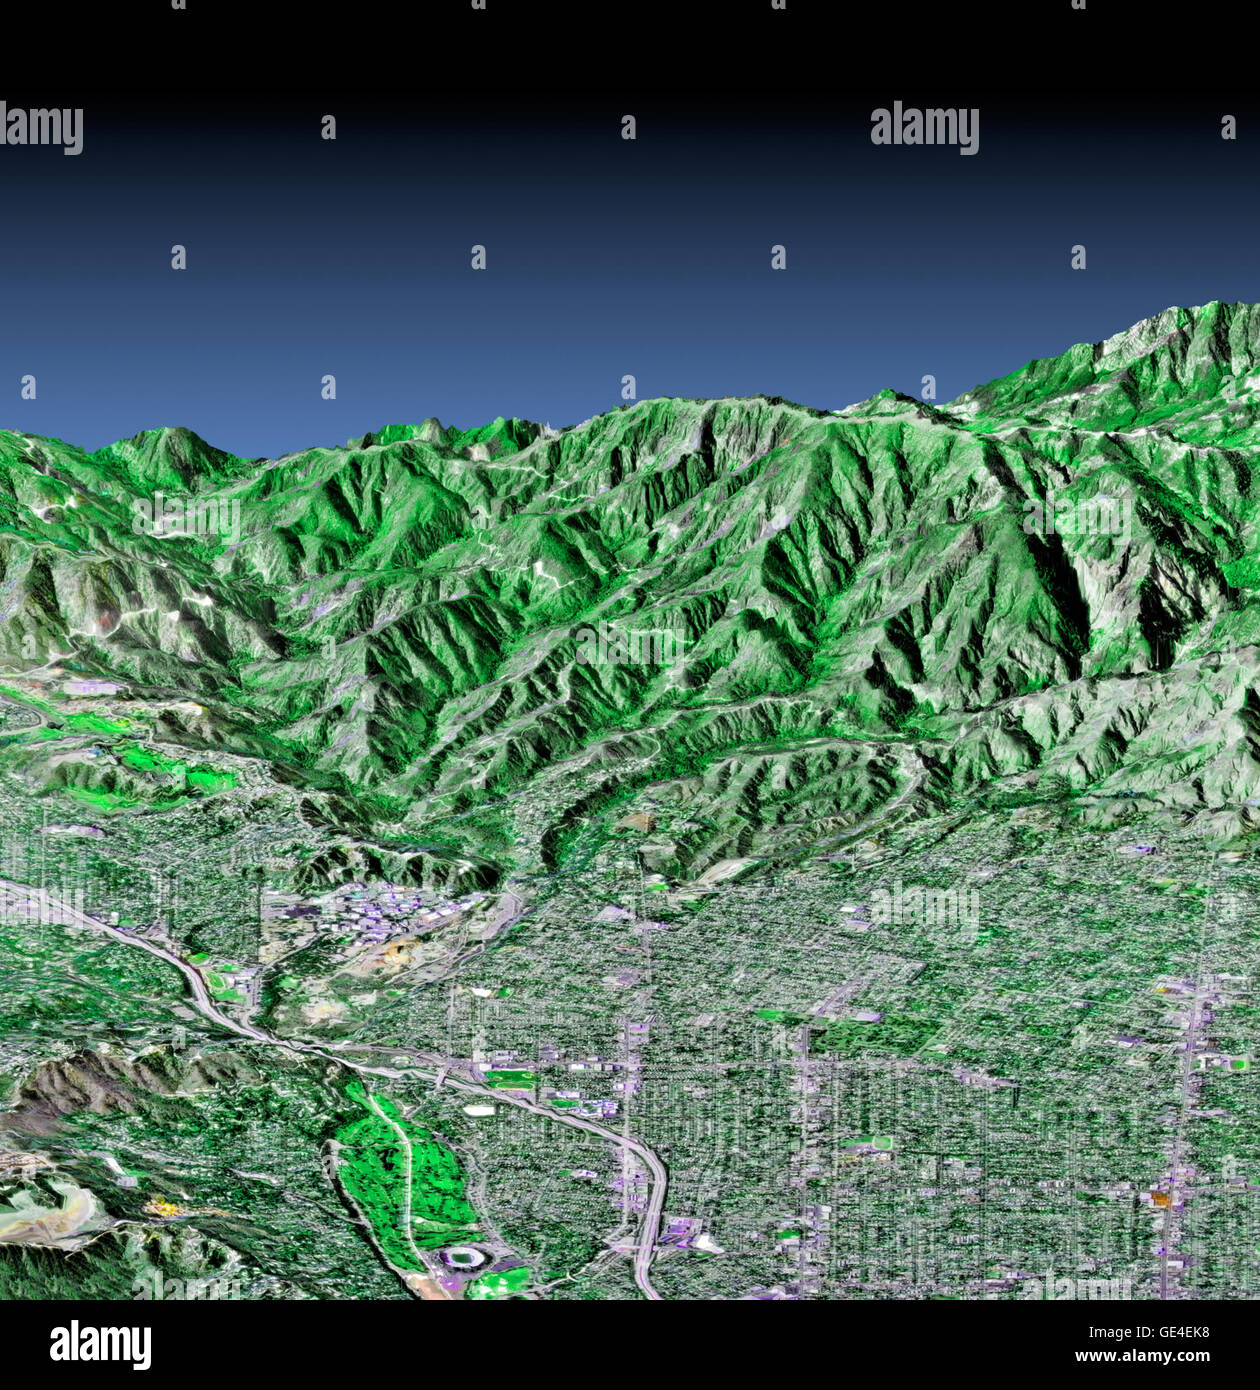 Diese perspektivische Ansicht zeigt den westlichen Teil der Stadt Pasadena, Kalifornien, Blick nach Norden in Richtung der San Gabriel Mountains. Teile der Städte Altadena und La Canada Flintridge werden ebenfalls angezeigt. Das Bild wurde aus drei Datasets erstellt: die Shuttle Radar Topographie Mission (SRTM) versorgt die Höhendaten; Landsat Daten vom 11. November 1986 zur Verfügung gestellt der Oberflächenfarbe Land (nicht in den Himmel) und digitale Luftaufnahmen U.S. Geological Survey bietet die Bilddetails. Der Rose Bowl, umgeben von einem Golfplatz, ist die Runden-Funktion in der unteren Mitte des Bildes. Die Jet-Pr Stockfoto